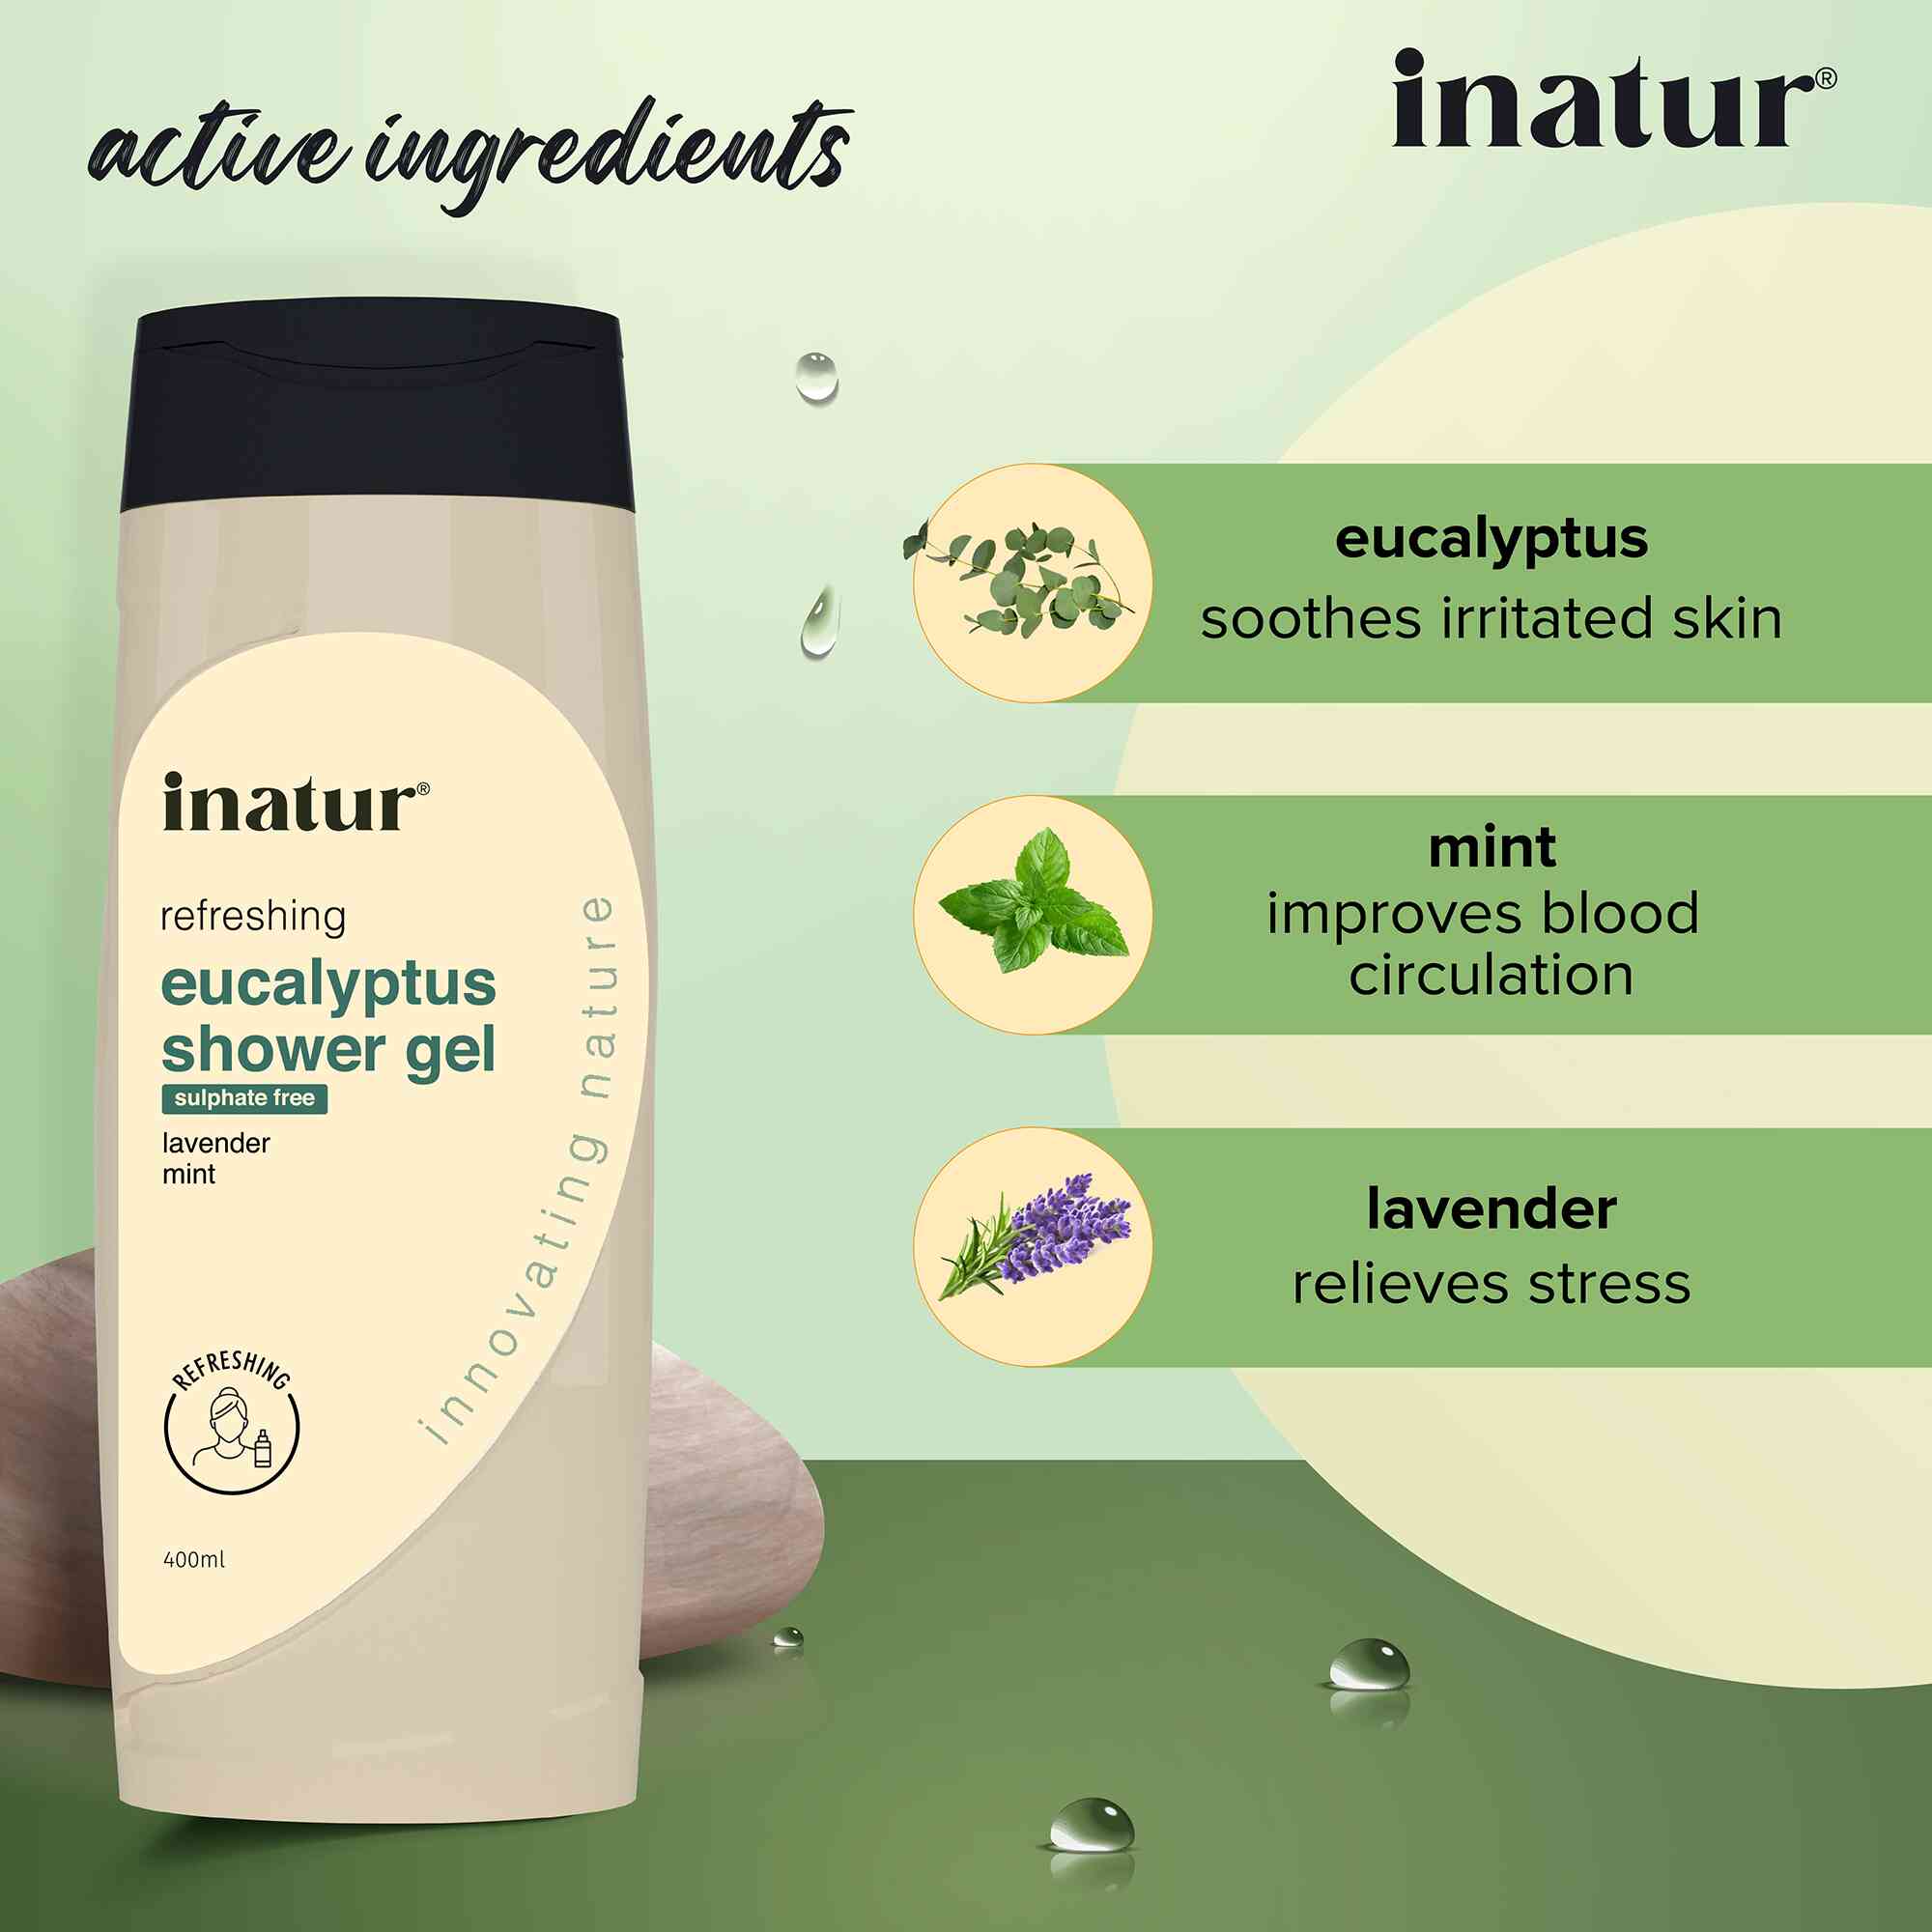 active ingredients of inatur eucalyptus shower gel